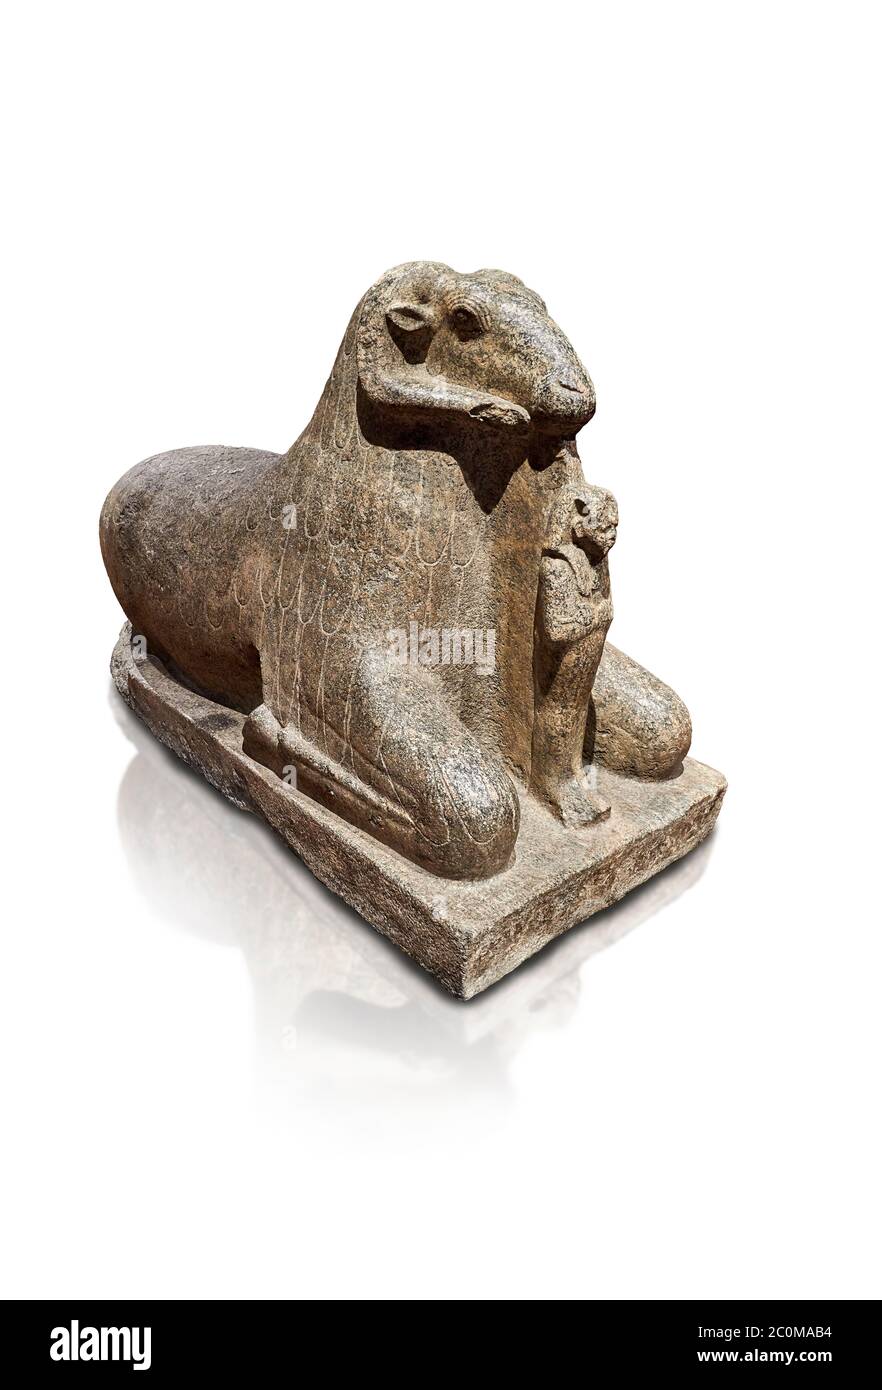 Ancienne statue égyptienne d'une RAM protégeant le roi Amenhotep III, granit, Nouveau Royaume, début de la 18e dynastie (1390-1353), Karnak, Temple de Mut. Égyptien Banque D'Images